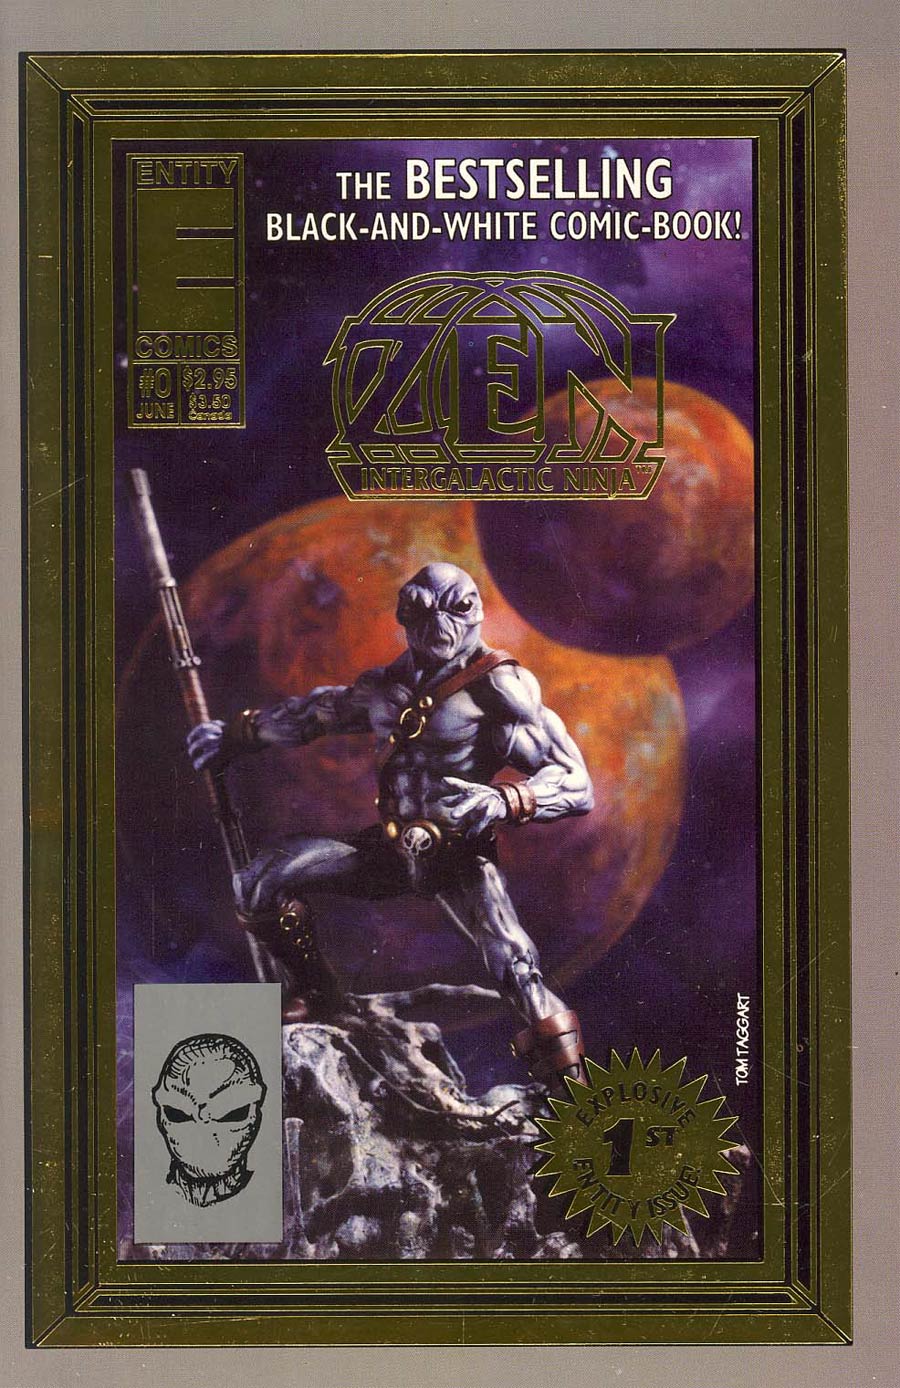 Zen Intergalactic Ninja Vol 4 #0 Gold Foil Cover